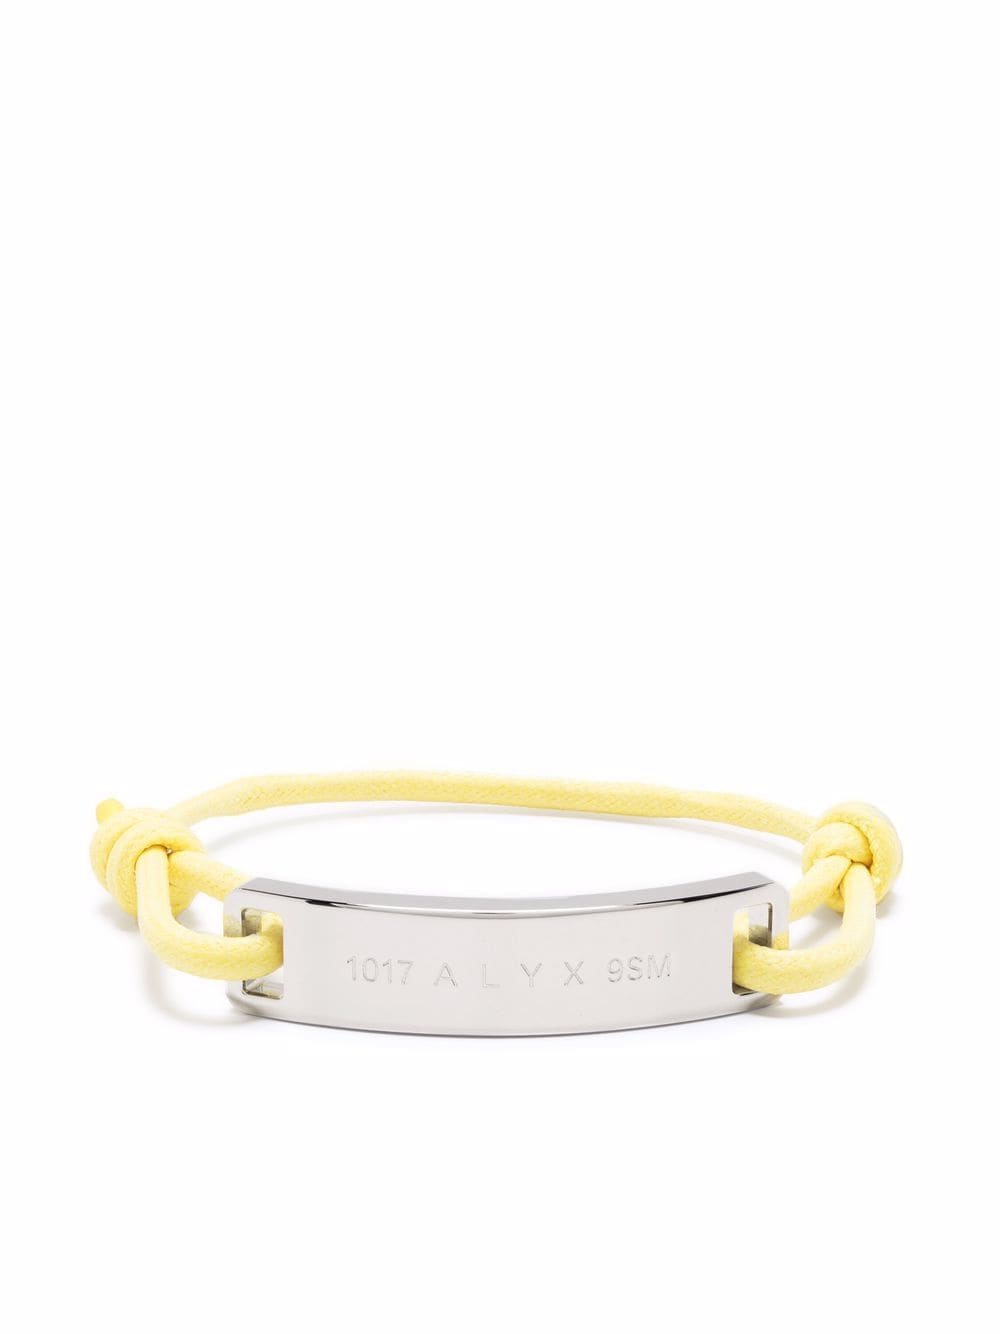 1017 ALYX 9SM logo plaque rope bracelet - Yellow